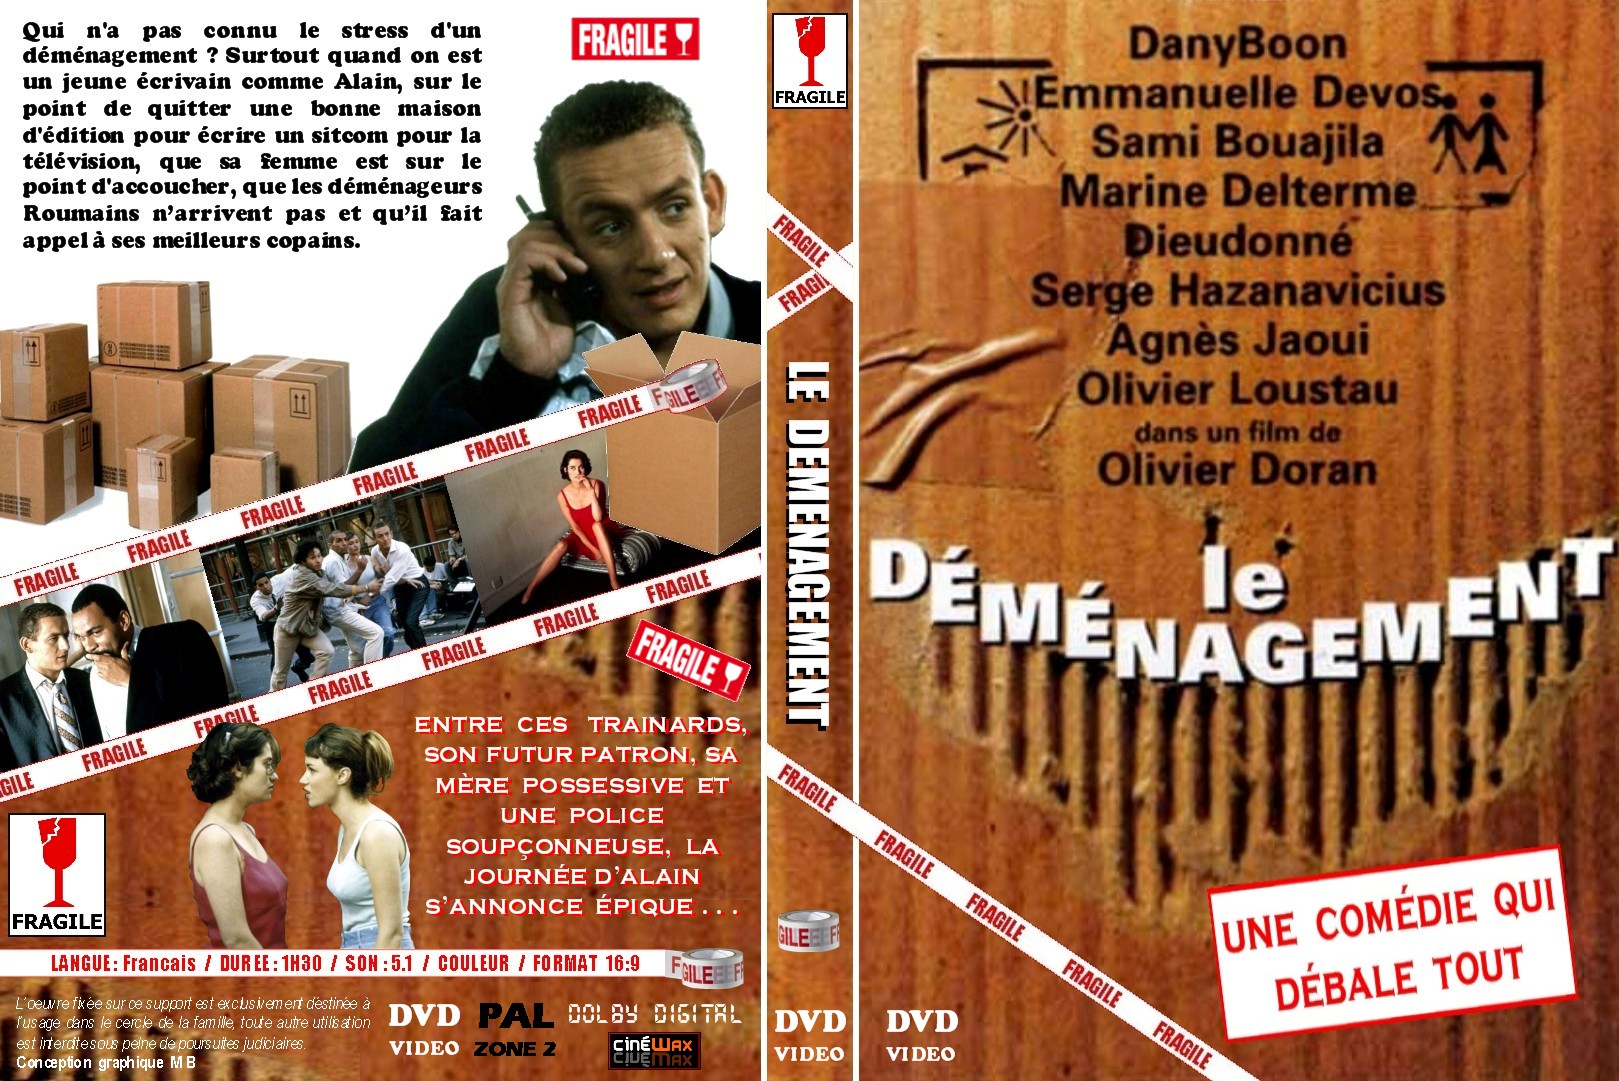 Jaquette DVD Le dmnagement custom